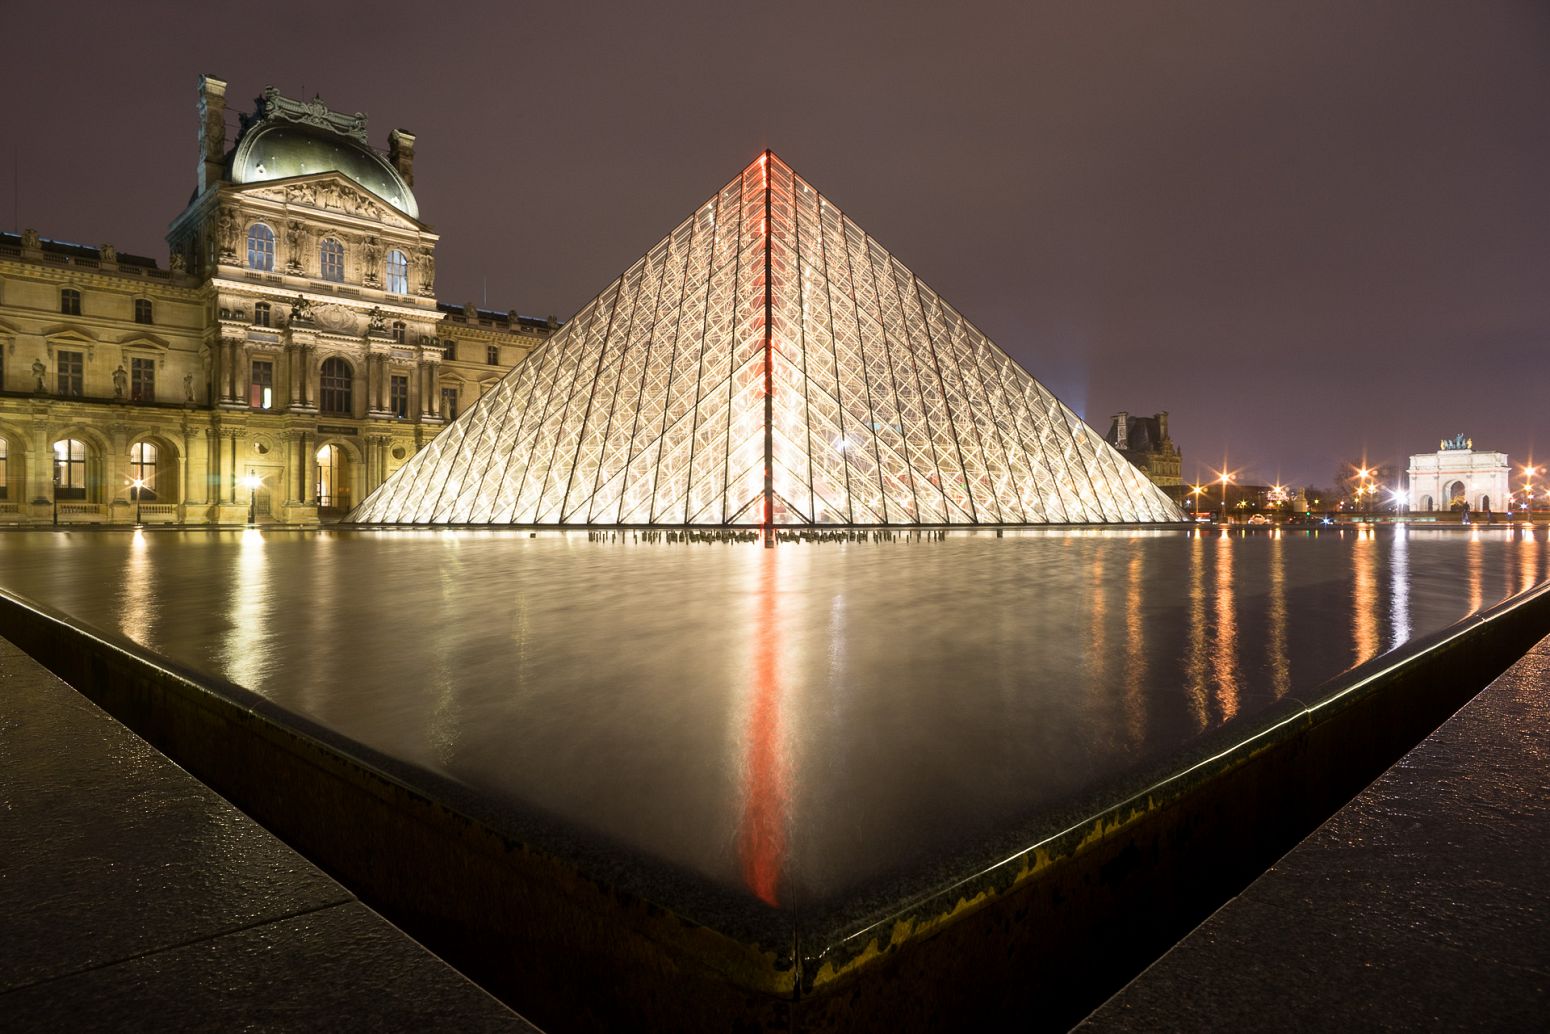 The Louvre museum, Paris, France